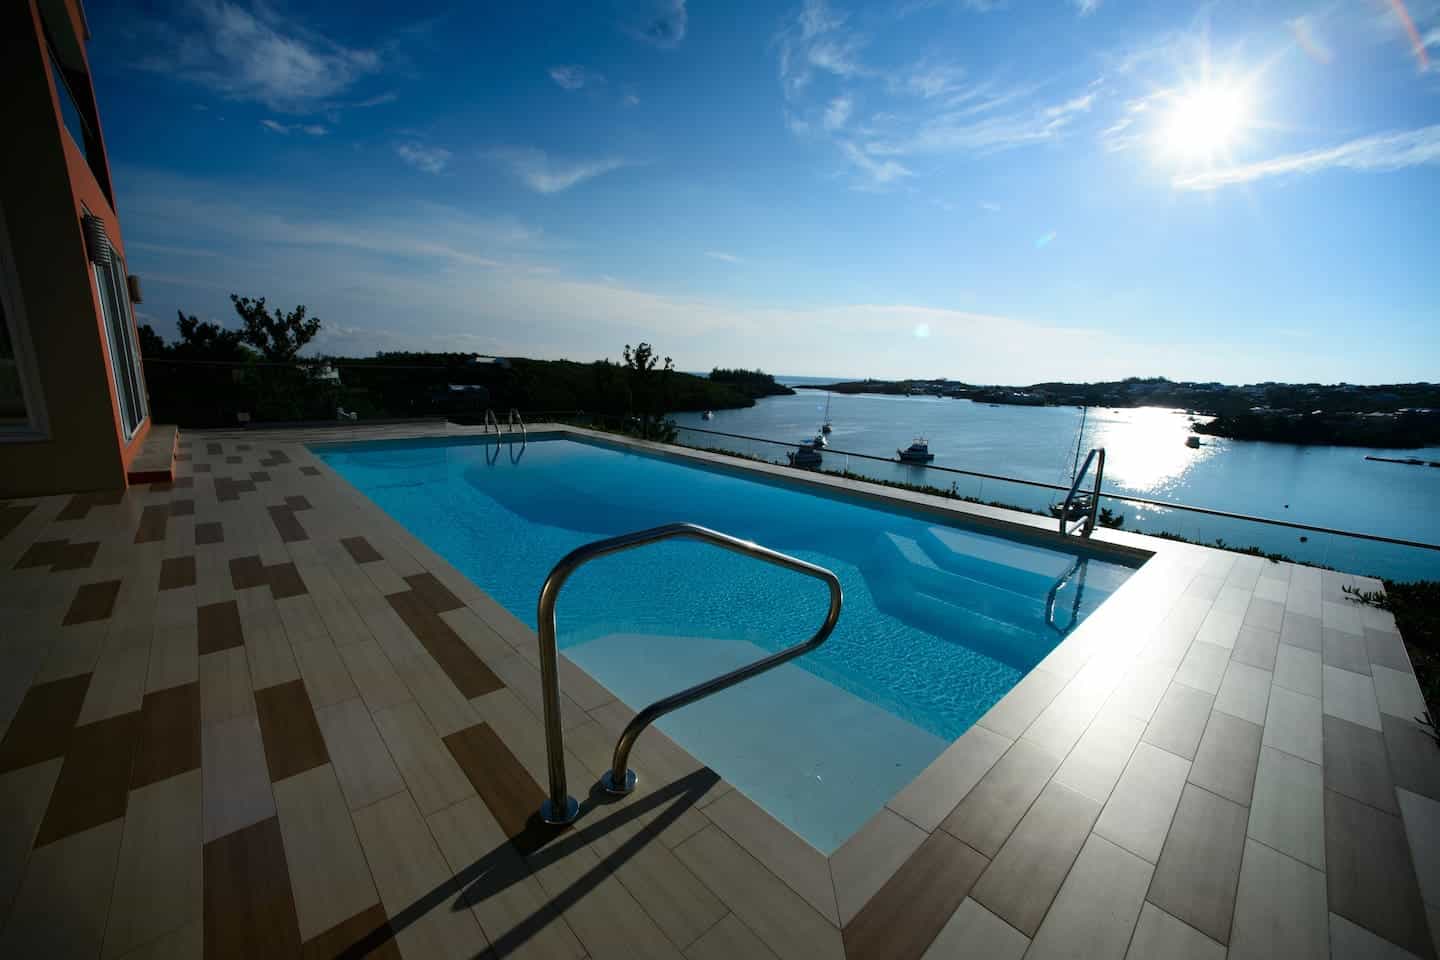 Image of Airbnb rental in Bermuda